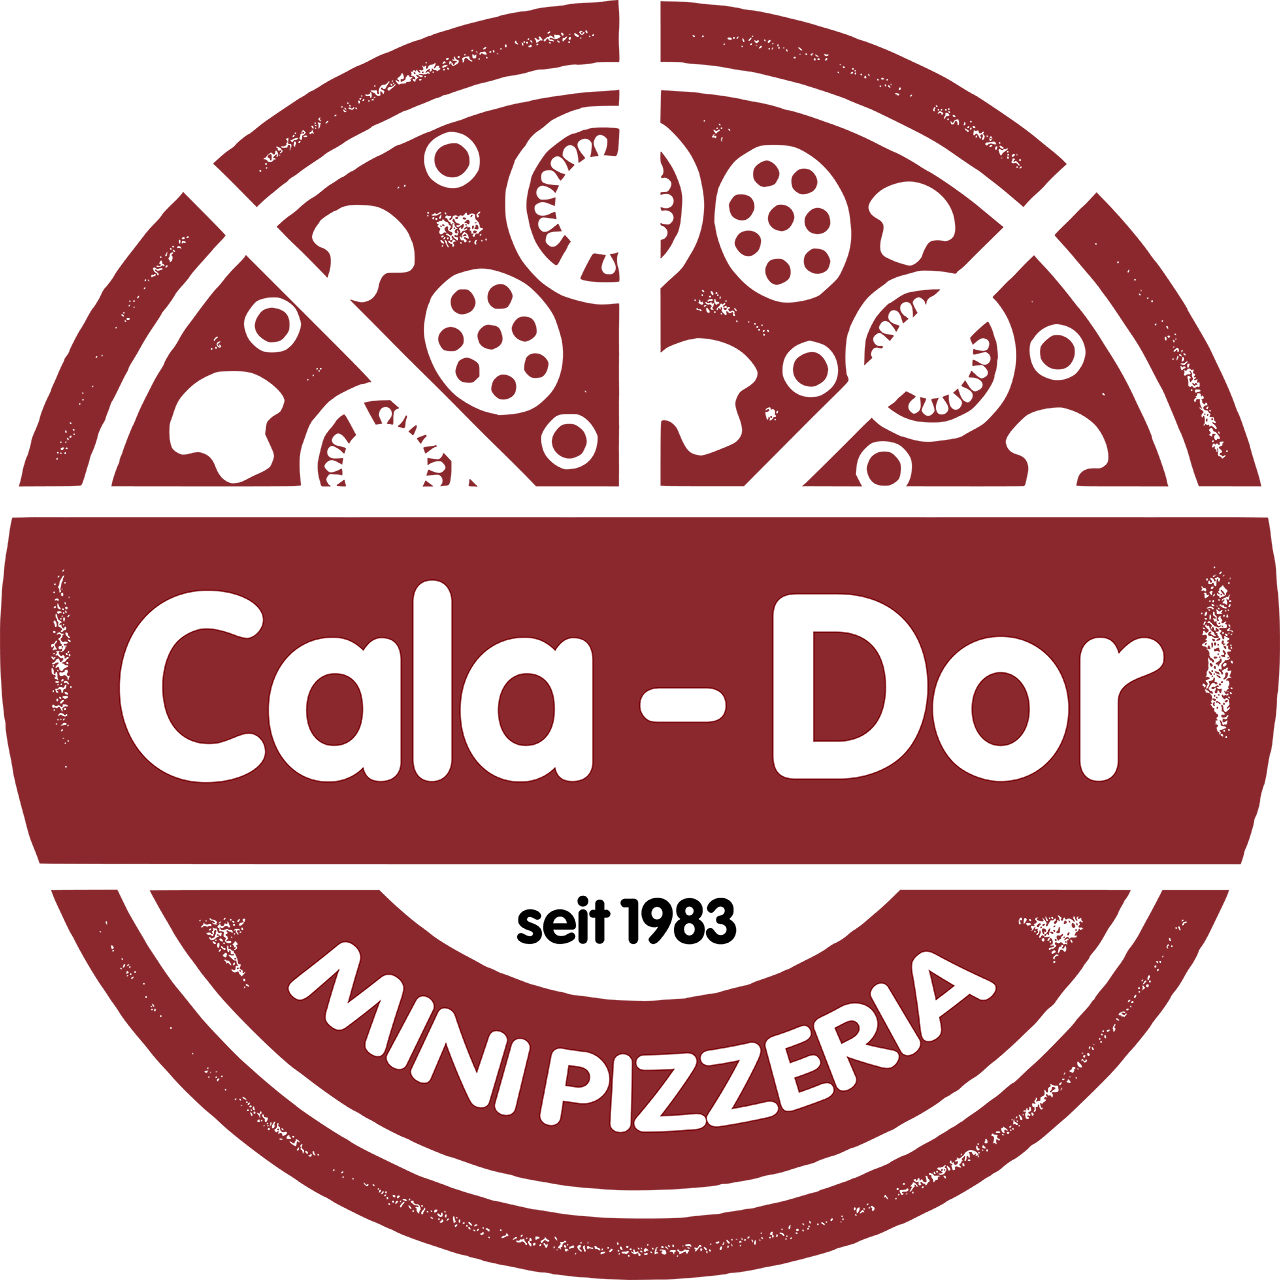 Mini Pizzeria Cala-Dor